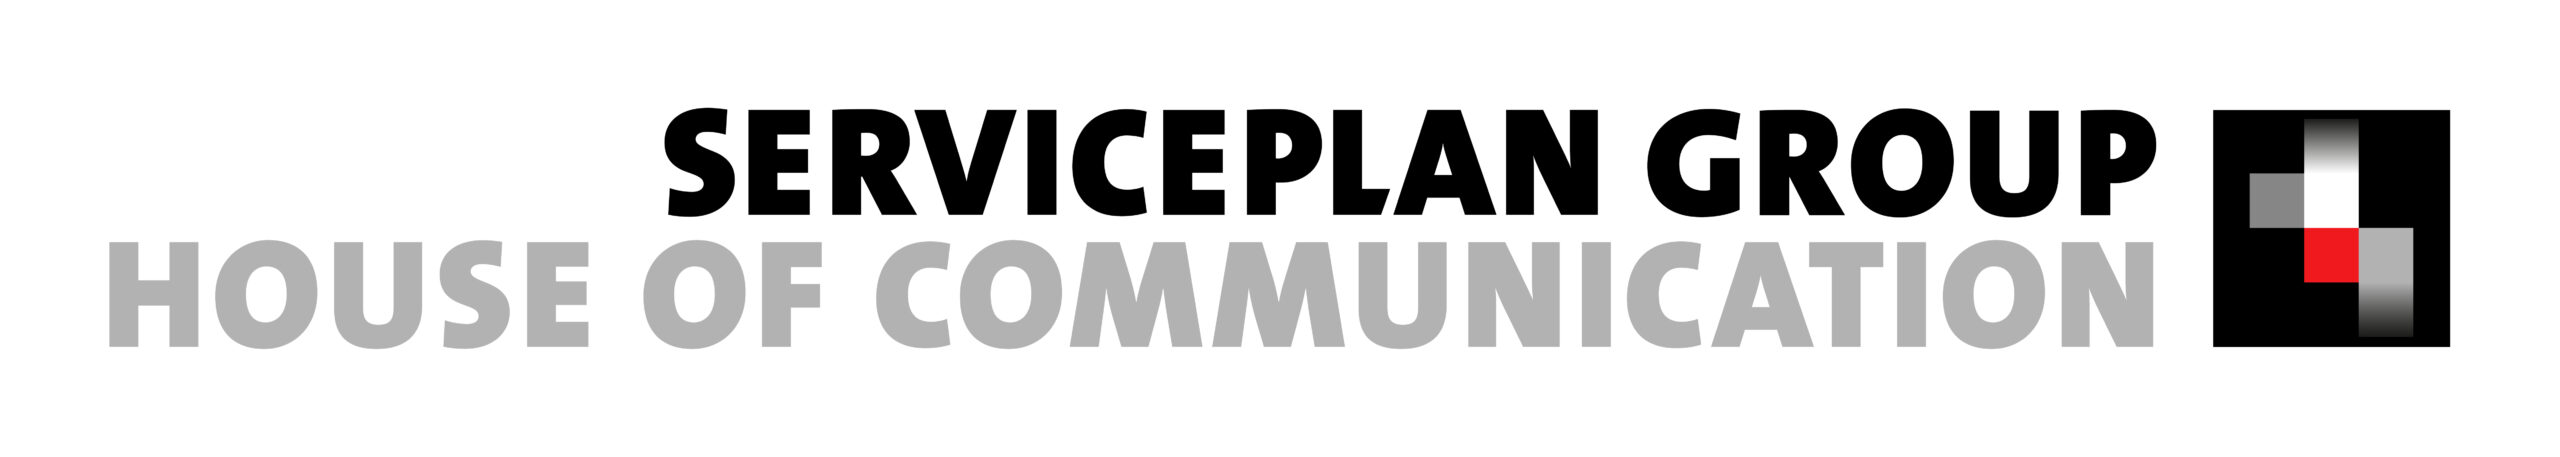 Serviceplan Group_Logo